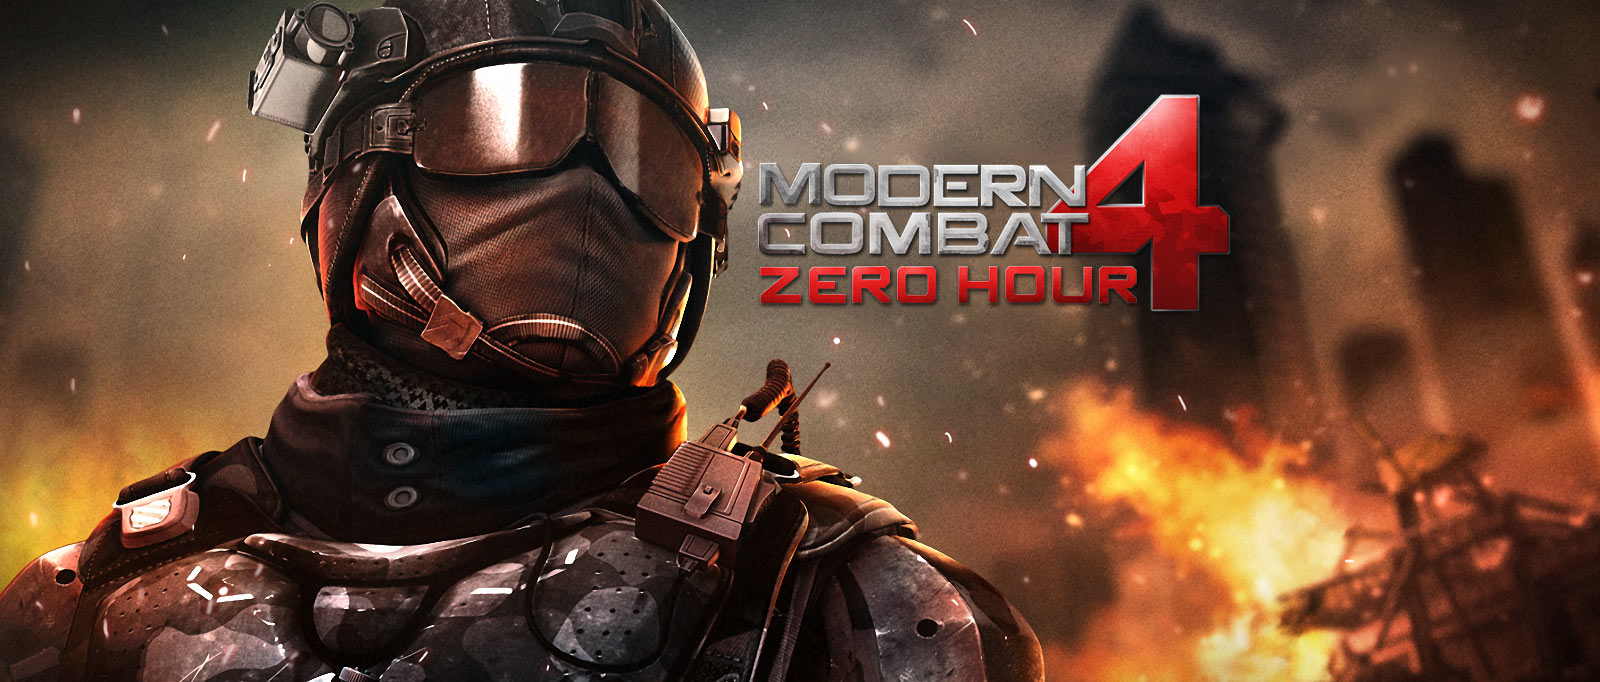 Modern Combat 4 Mobile Premium